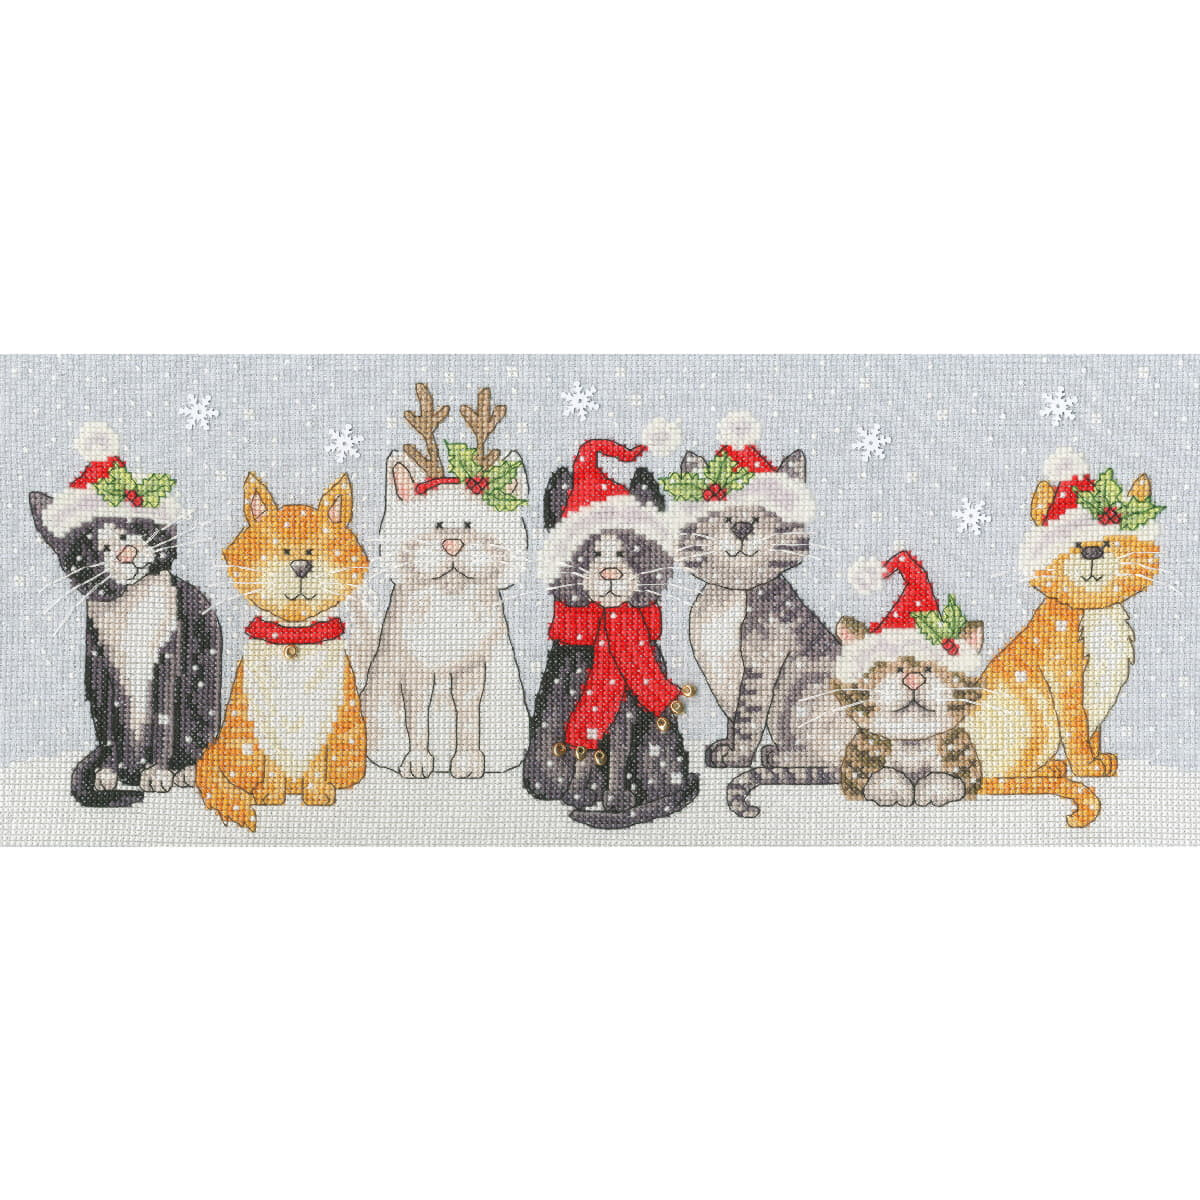 Eine Illustration von sieben Katzen, die in einer Reihe...